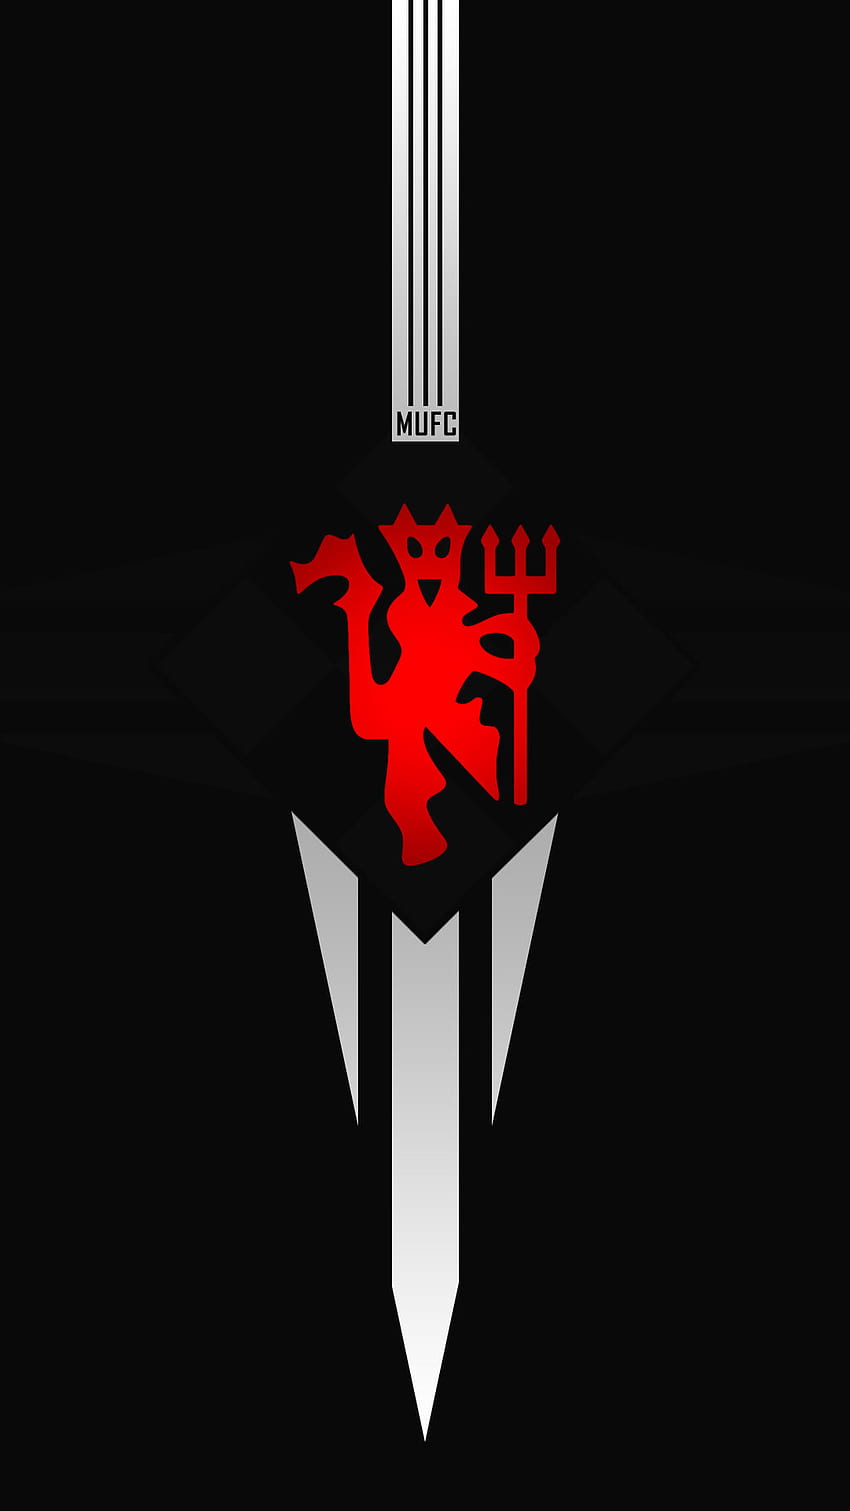 Logo Man United untuk ponsel iPhone dan Android - Man Utd Core, Manchester United wallpaper ponsel HD